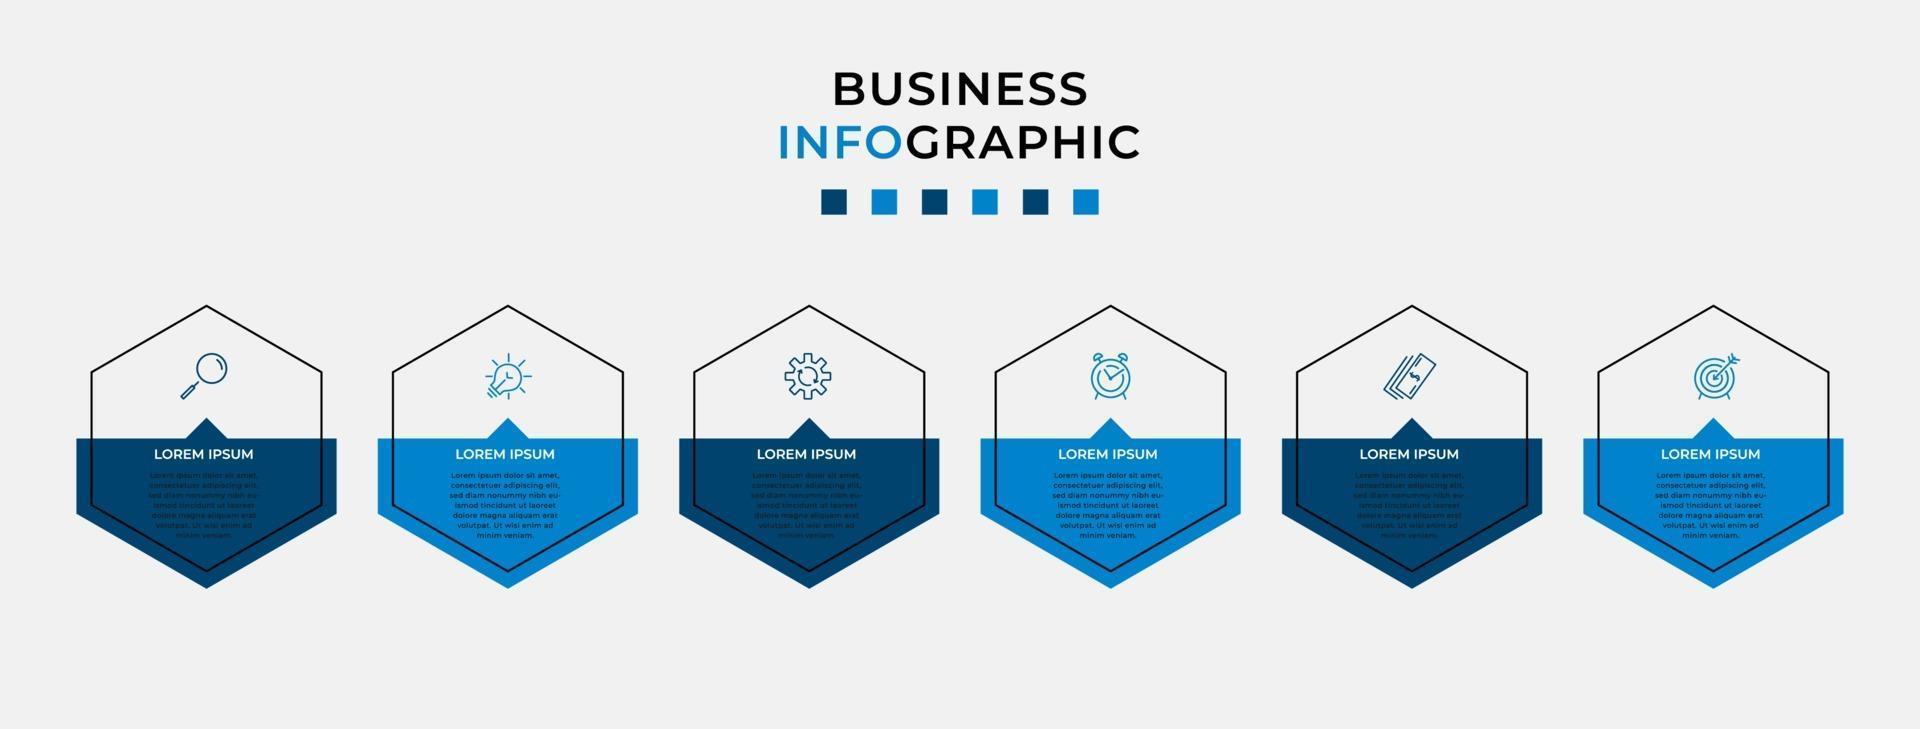 infographic design affärsmall med ikoner och 6 alternativ eller steg vektor